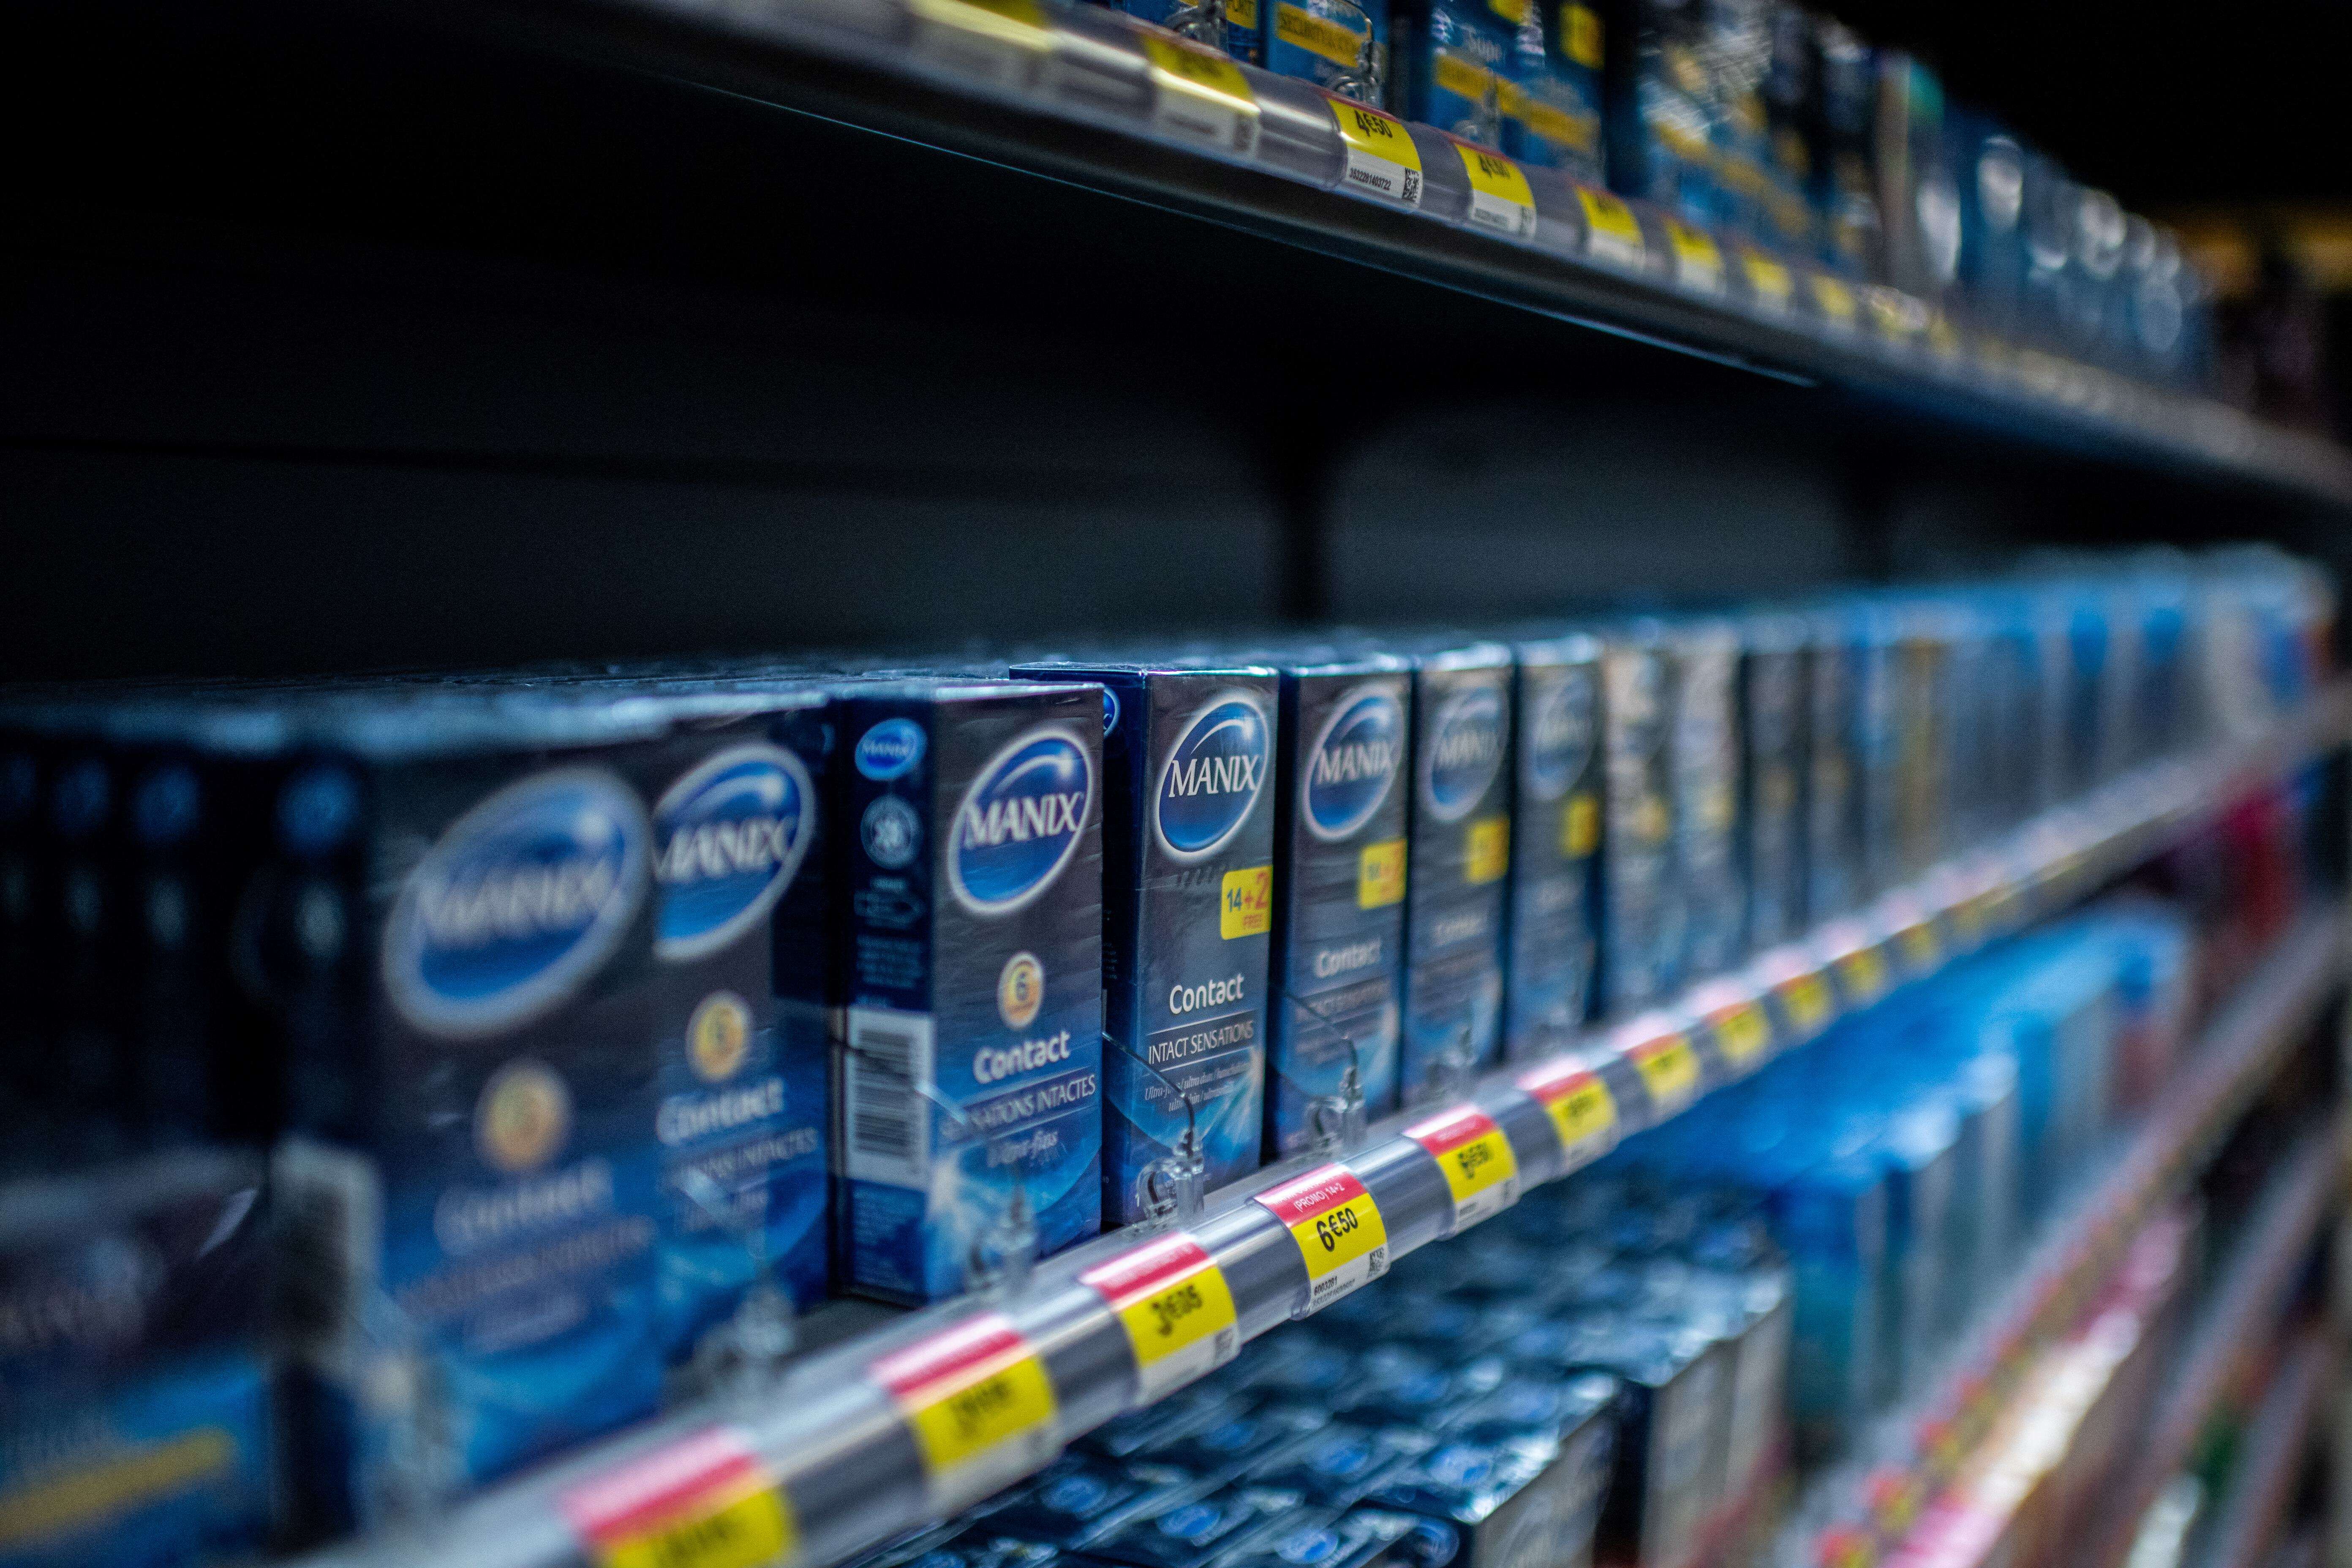 À partir de 2023, les préservatifs seront gratuits en pharmacie pour les 18-25 ans (photo d’illustration prise dans une pharmacie parisienne en 2020).